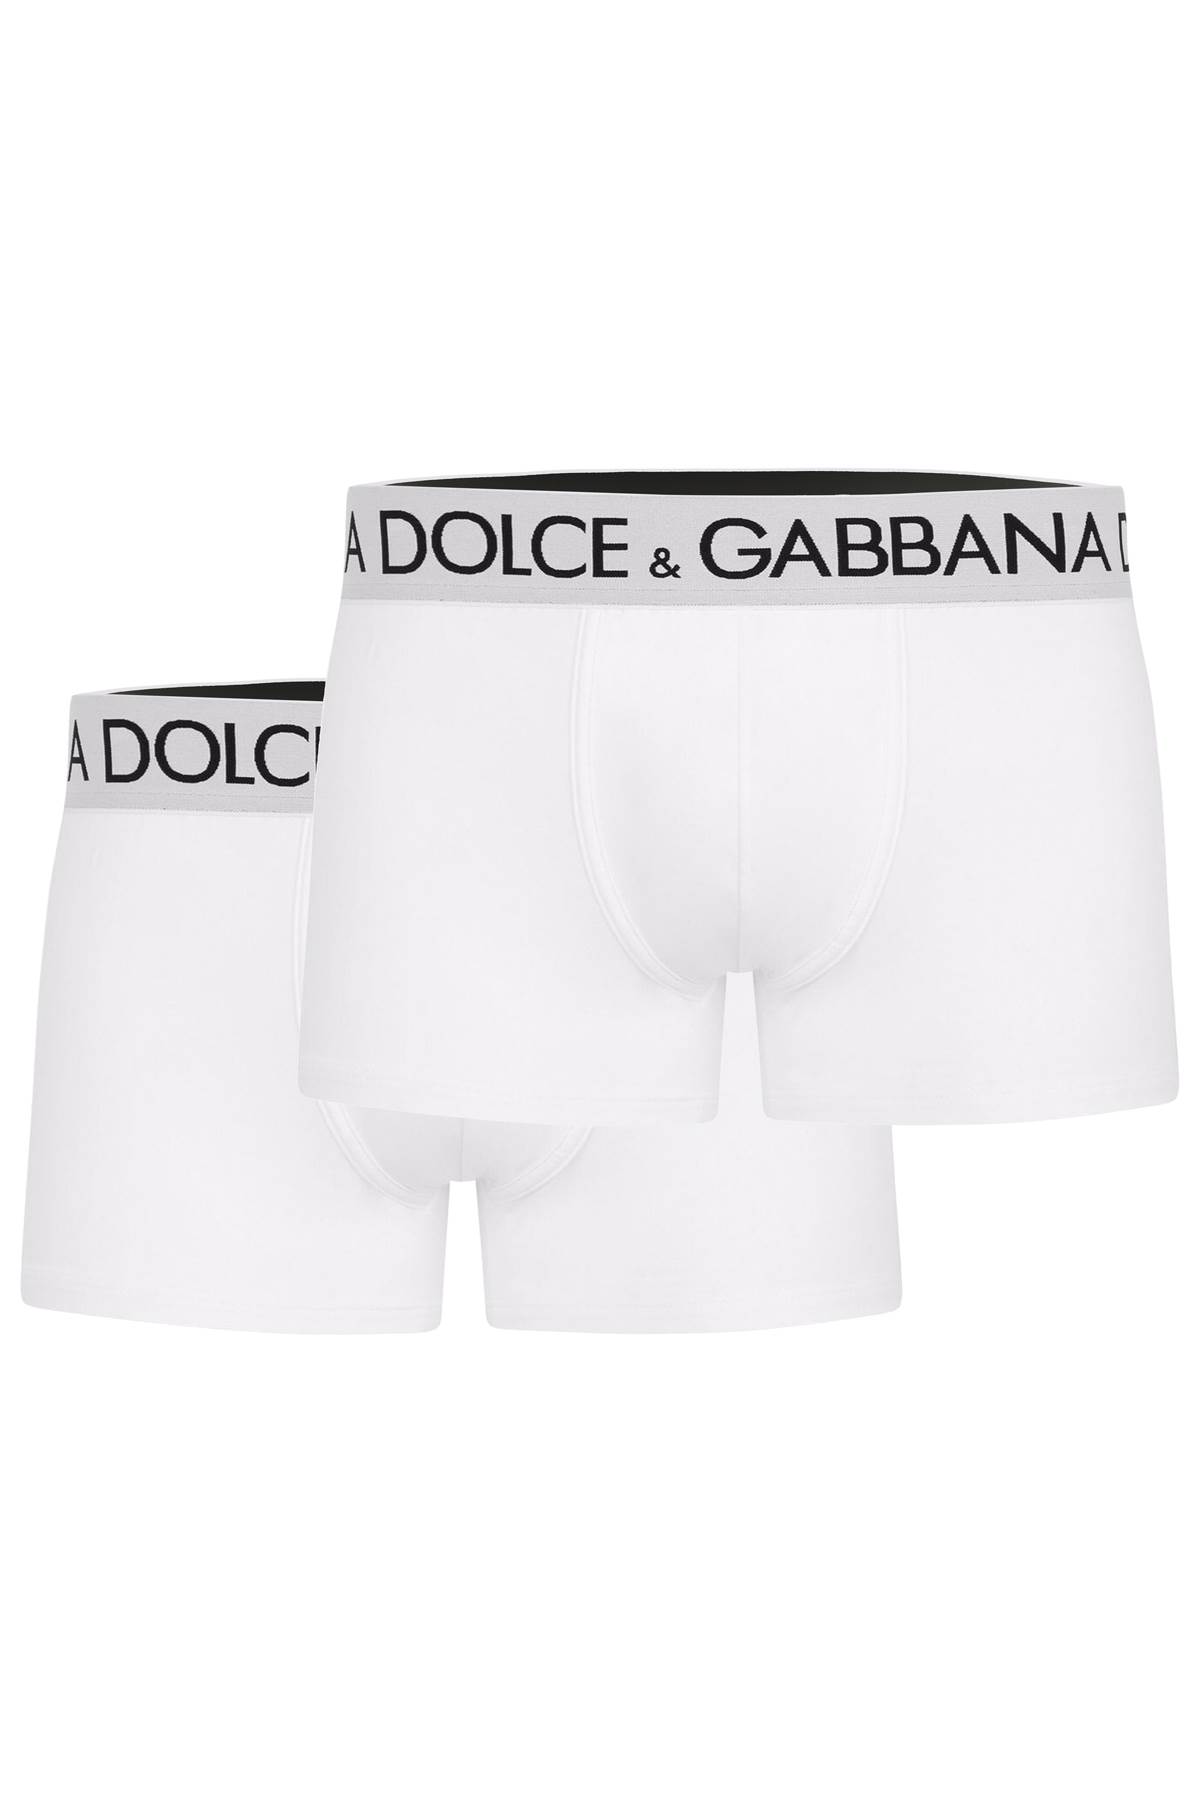 Dolce & Gabbana Bi-pack Underwear Boxer